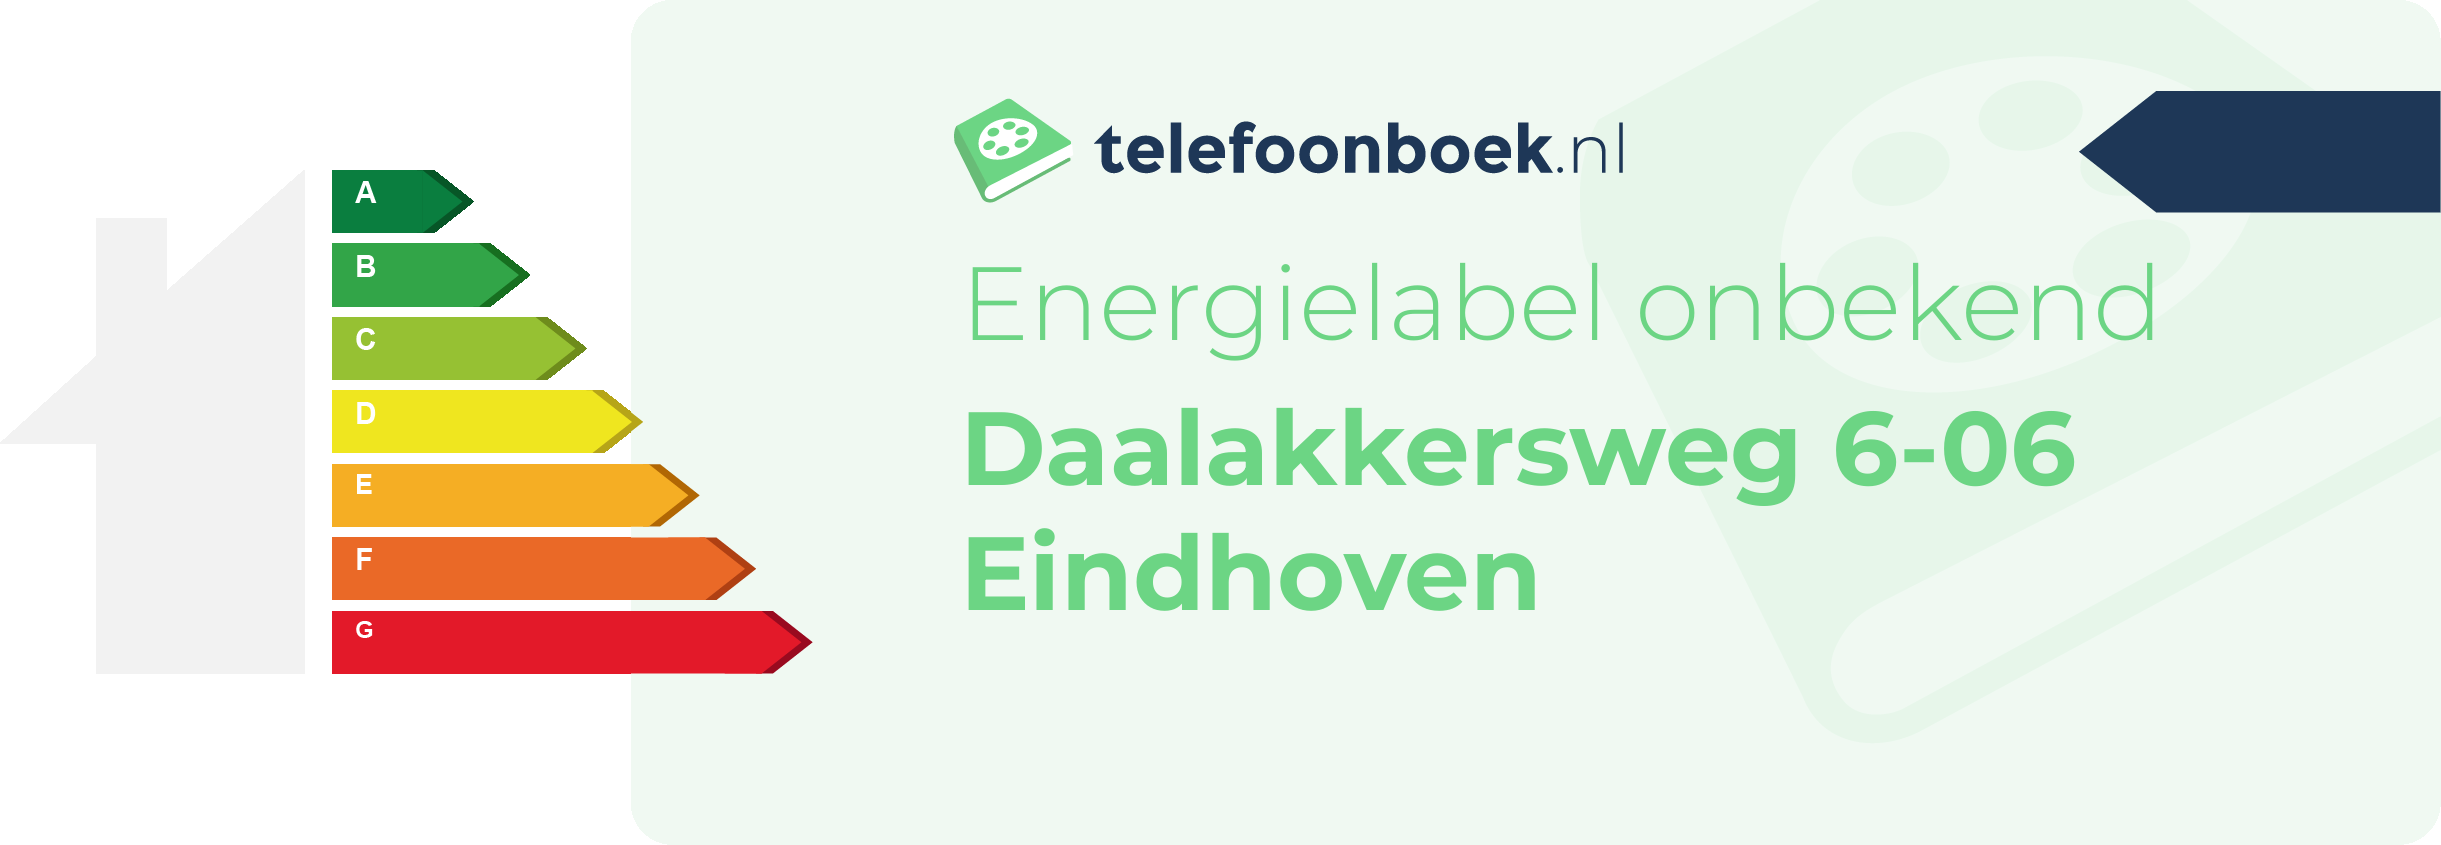 Energielabel Daalakkersweg 6-06 Eindhoven